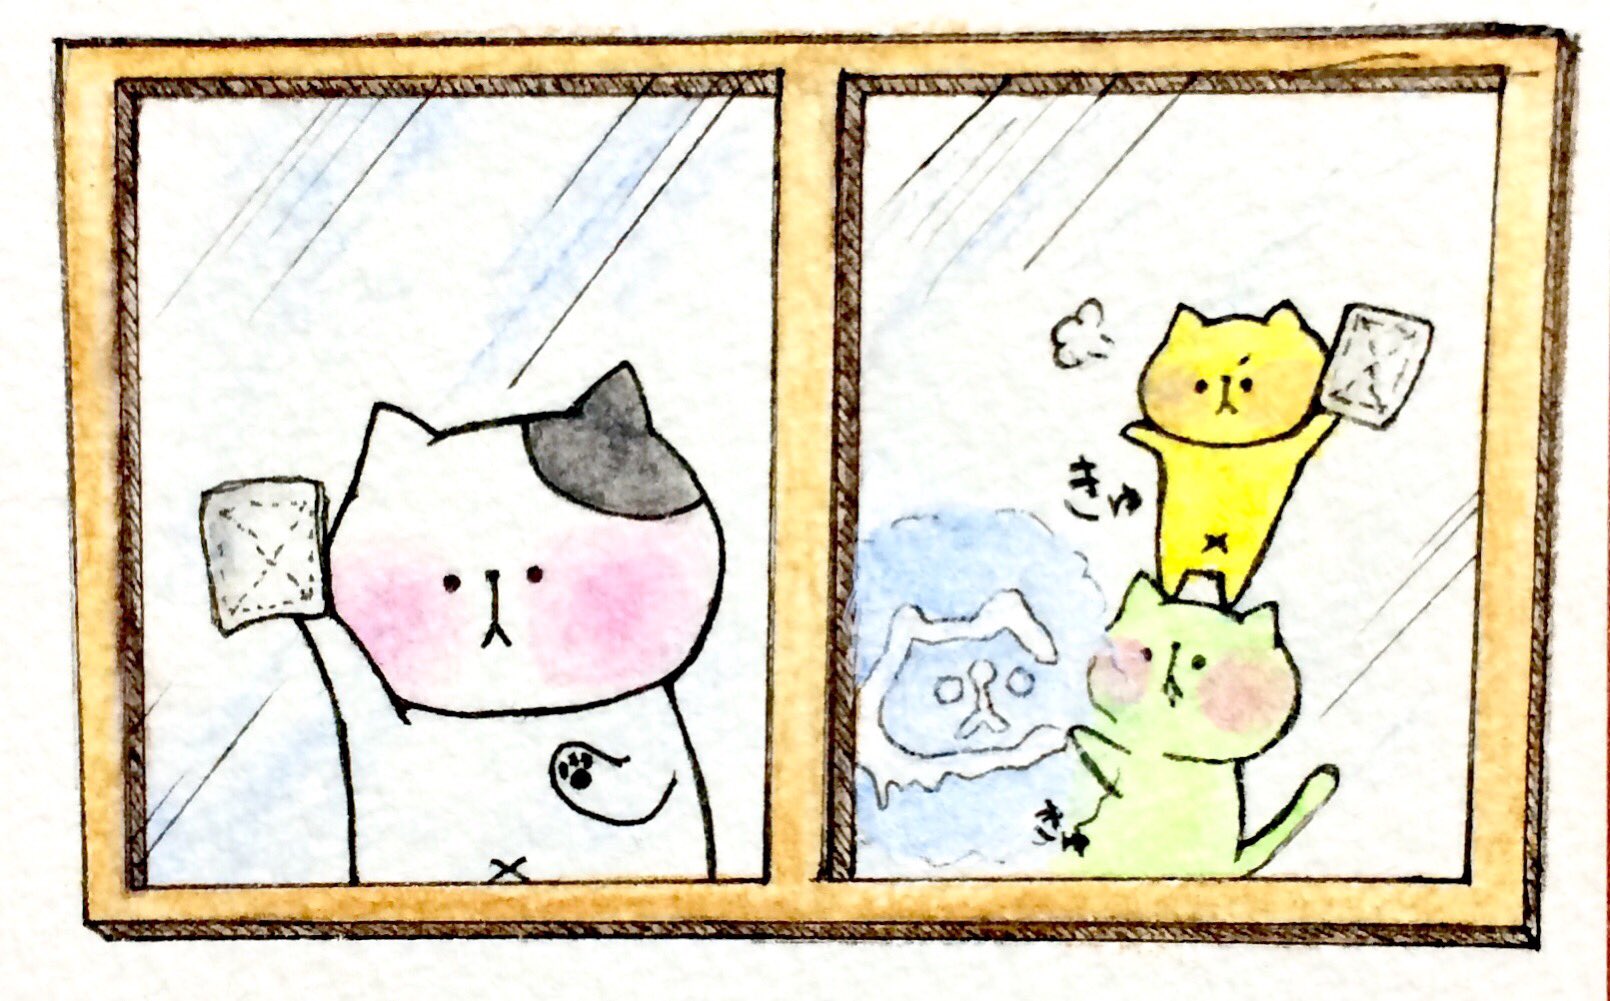 Twitter এ おこにゃん 今年もあと2日 大掃除 年末 窓拭き らくがき 猫 ネコ ねこ イラスト 可愛い 手描き 癒し 絵描きさんと繋がりたい イラスト好きな人と繋がりたい Cats T Co Tetoznx6u6 ট ইট র